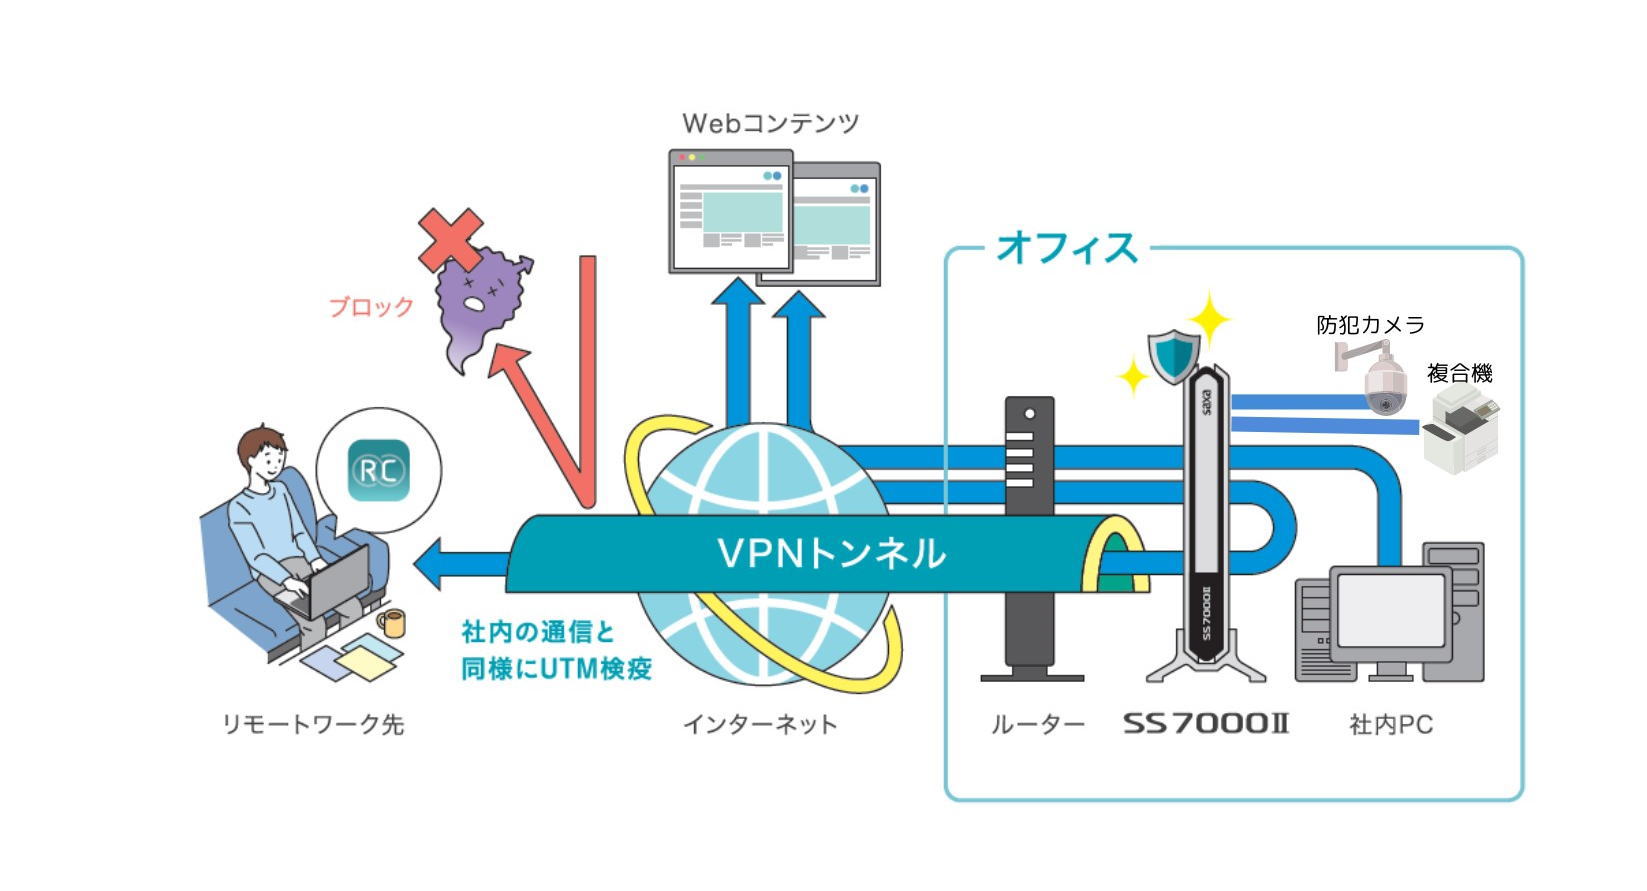 SSL-VPNを利用してセキュアに社内ネットワークへリモート接続ができます。また出先でもUTMを経由してインターネットに接続することができるため、リモートワーク接続端末もUTM検疫が行なわれる中で通信することができます。